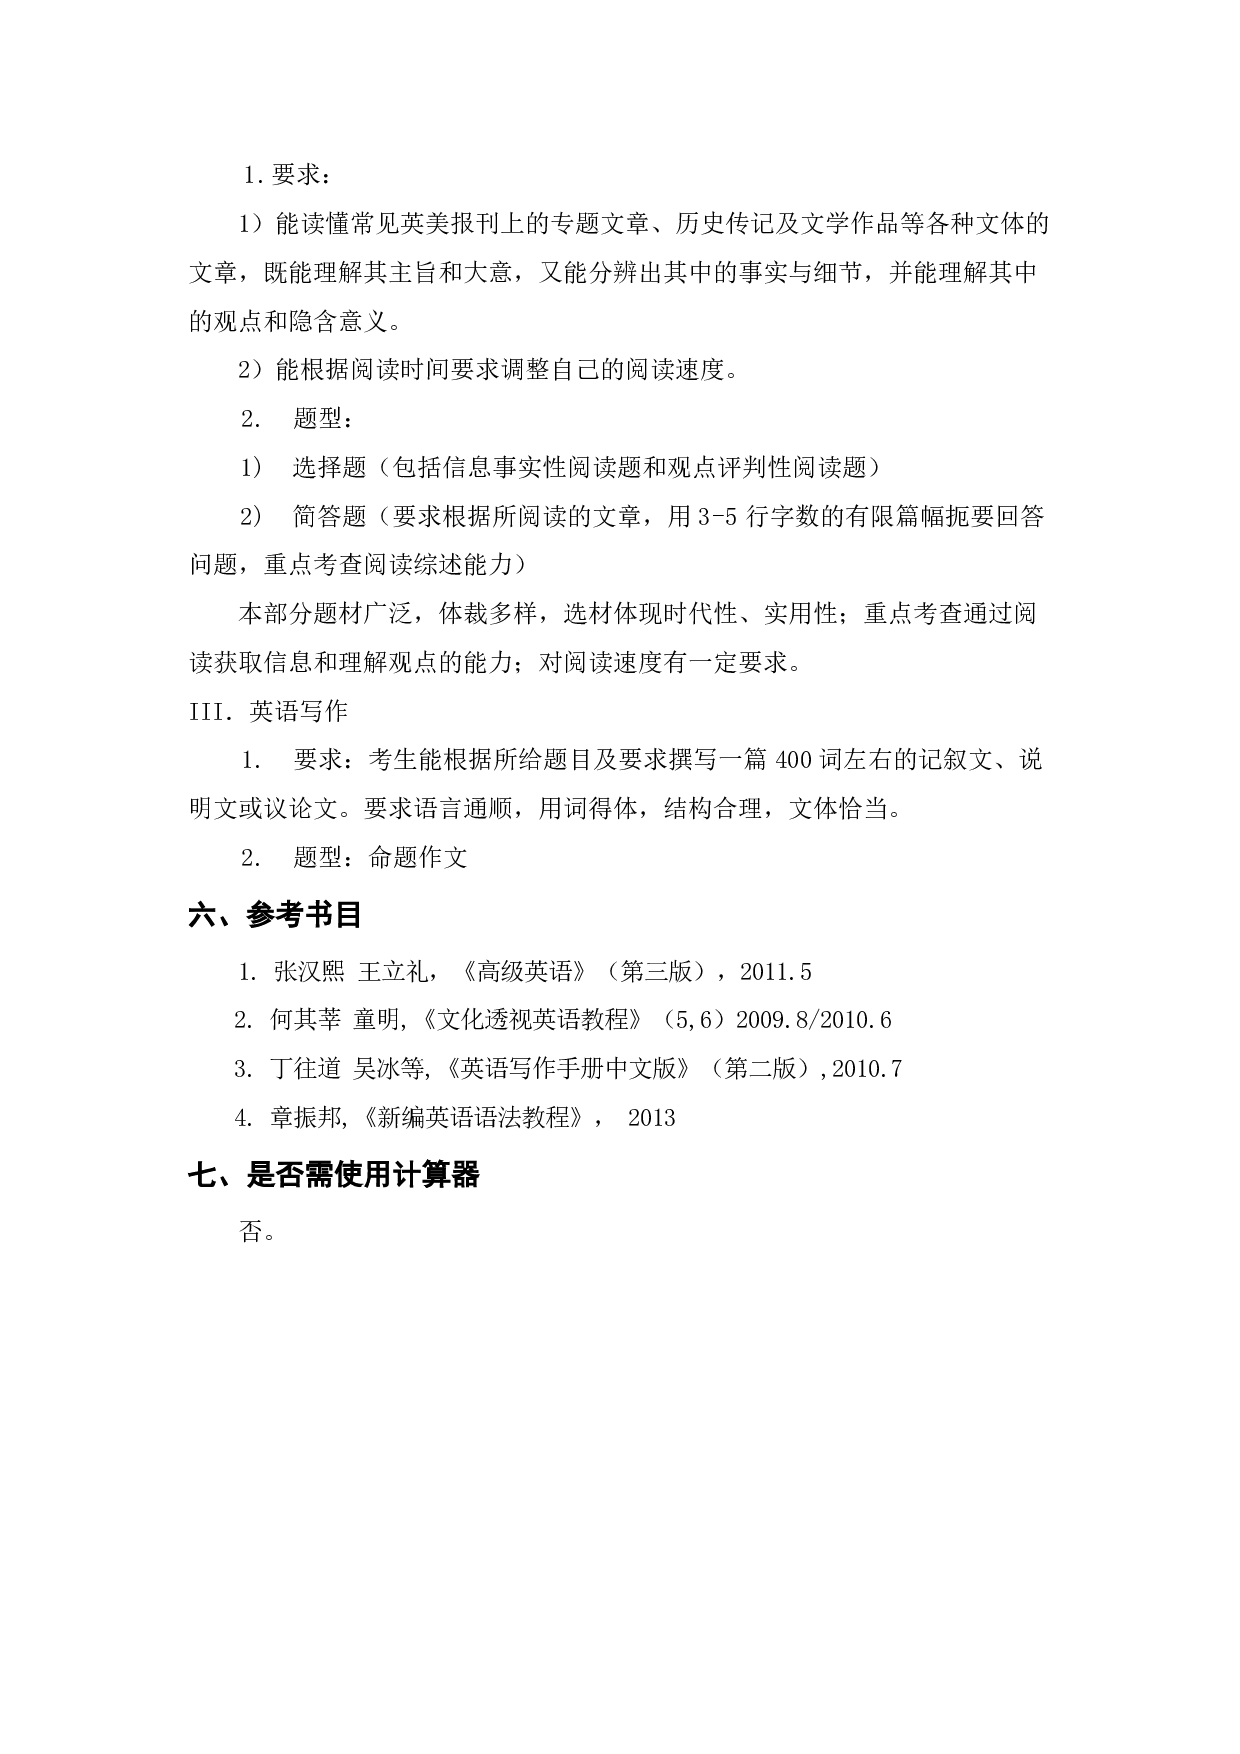 上海海洋大学2023年考研自命题科目 211《翻译硕士英语》 考试范围第2页